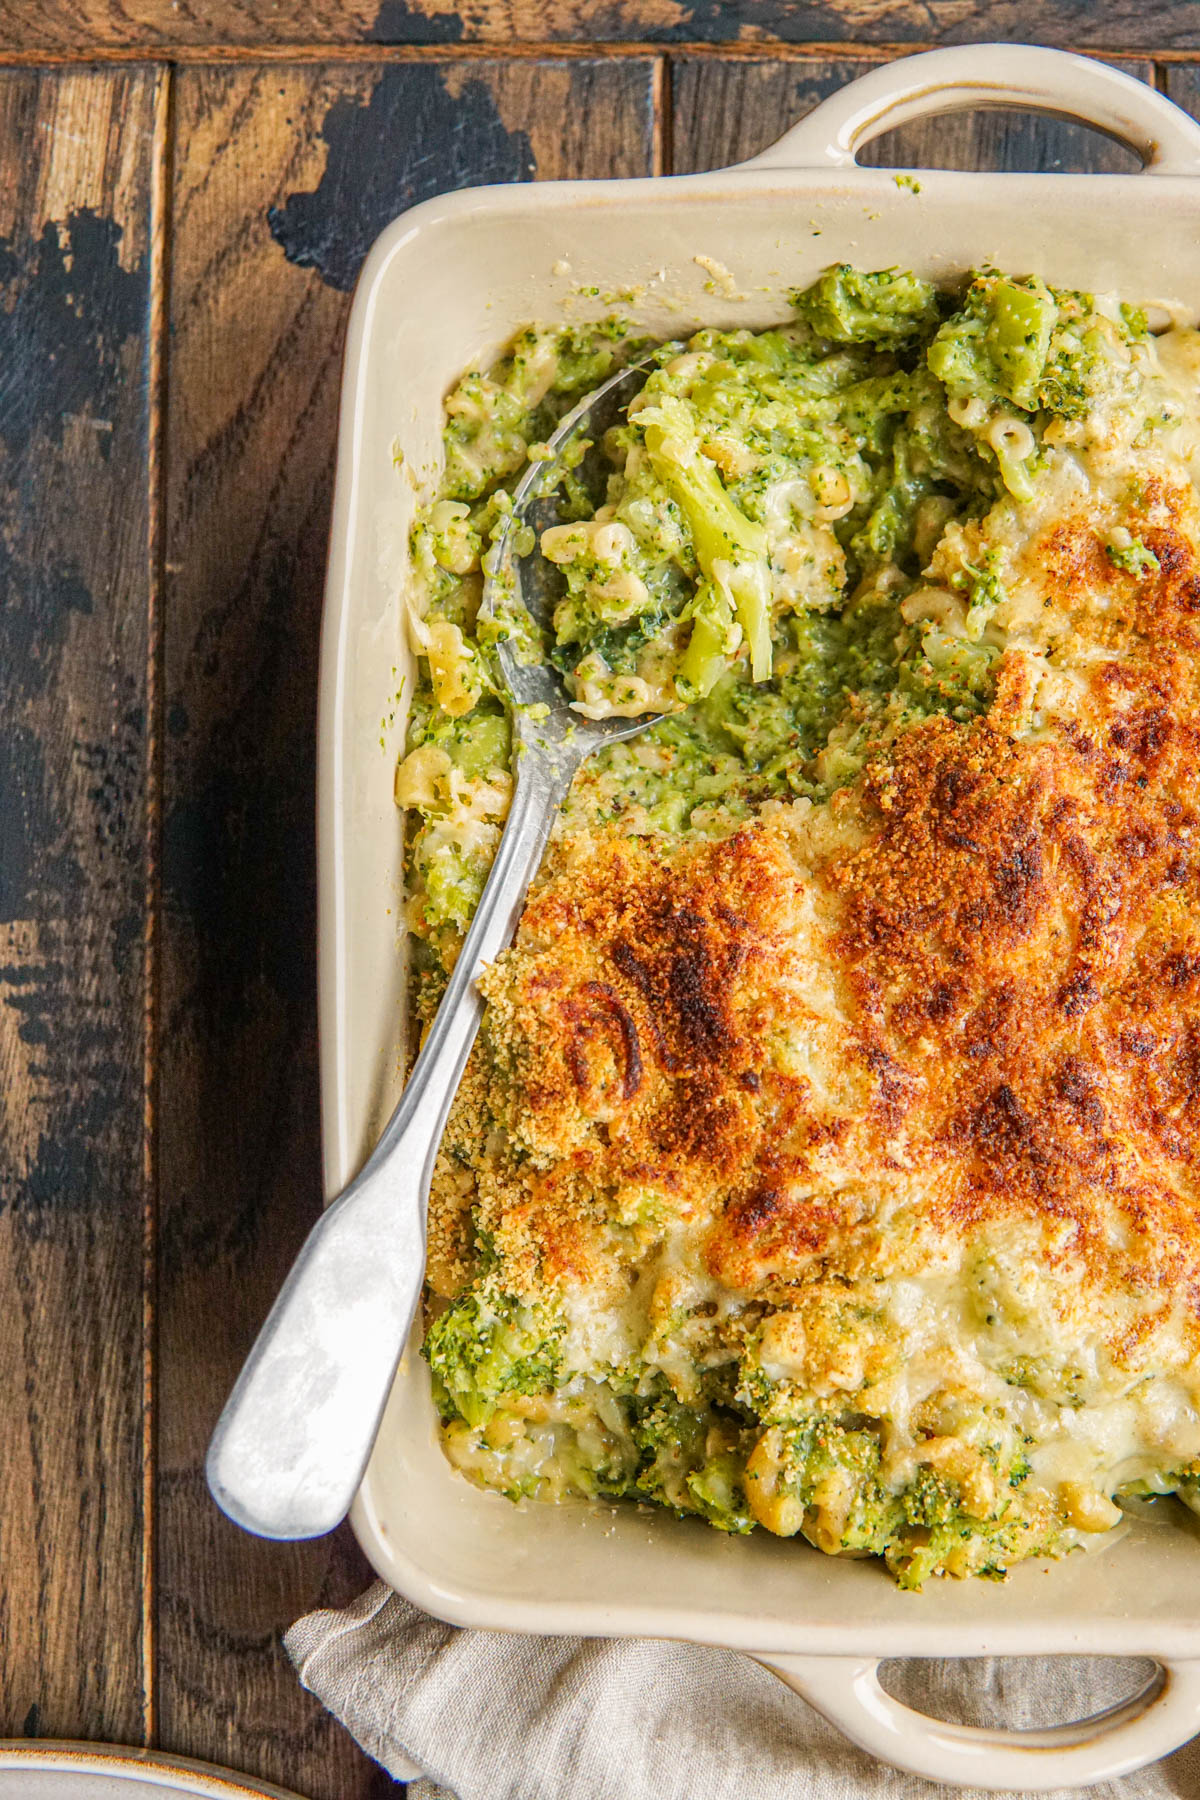 Ovenschotel met pasta en broccoli